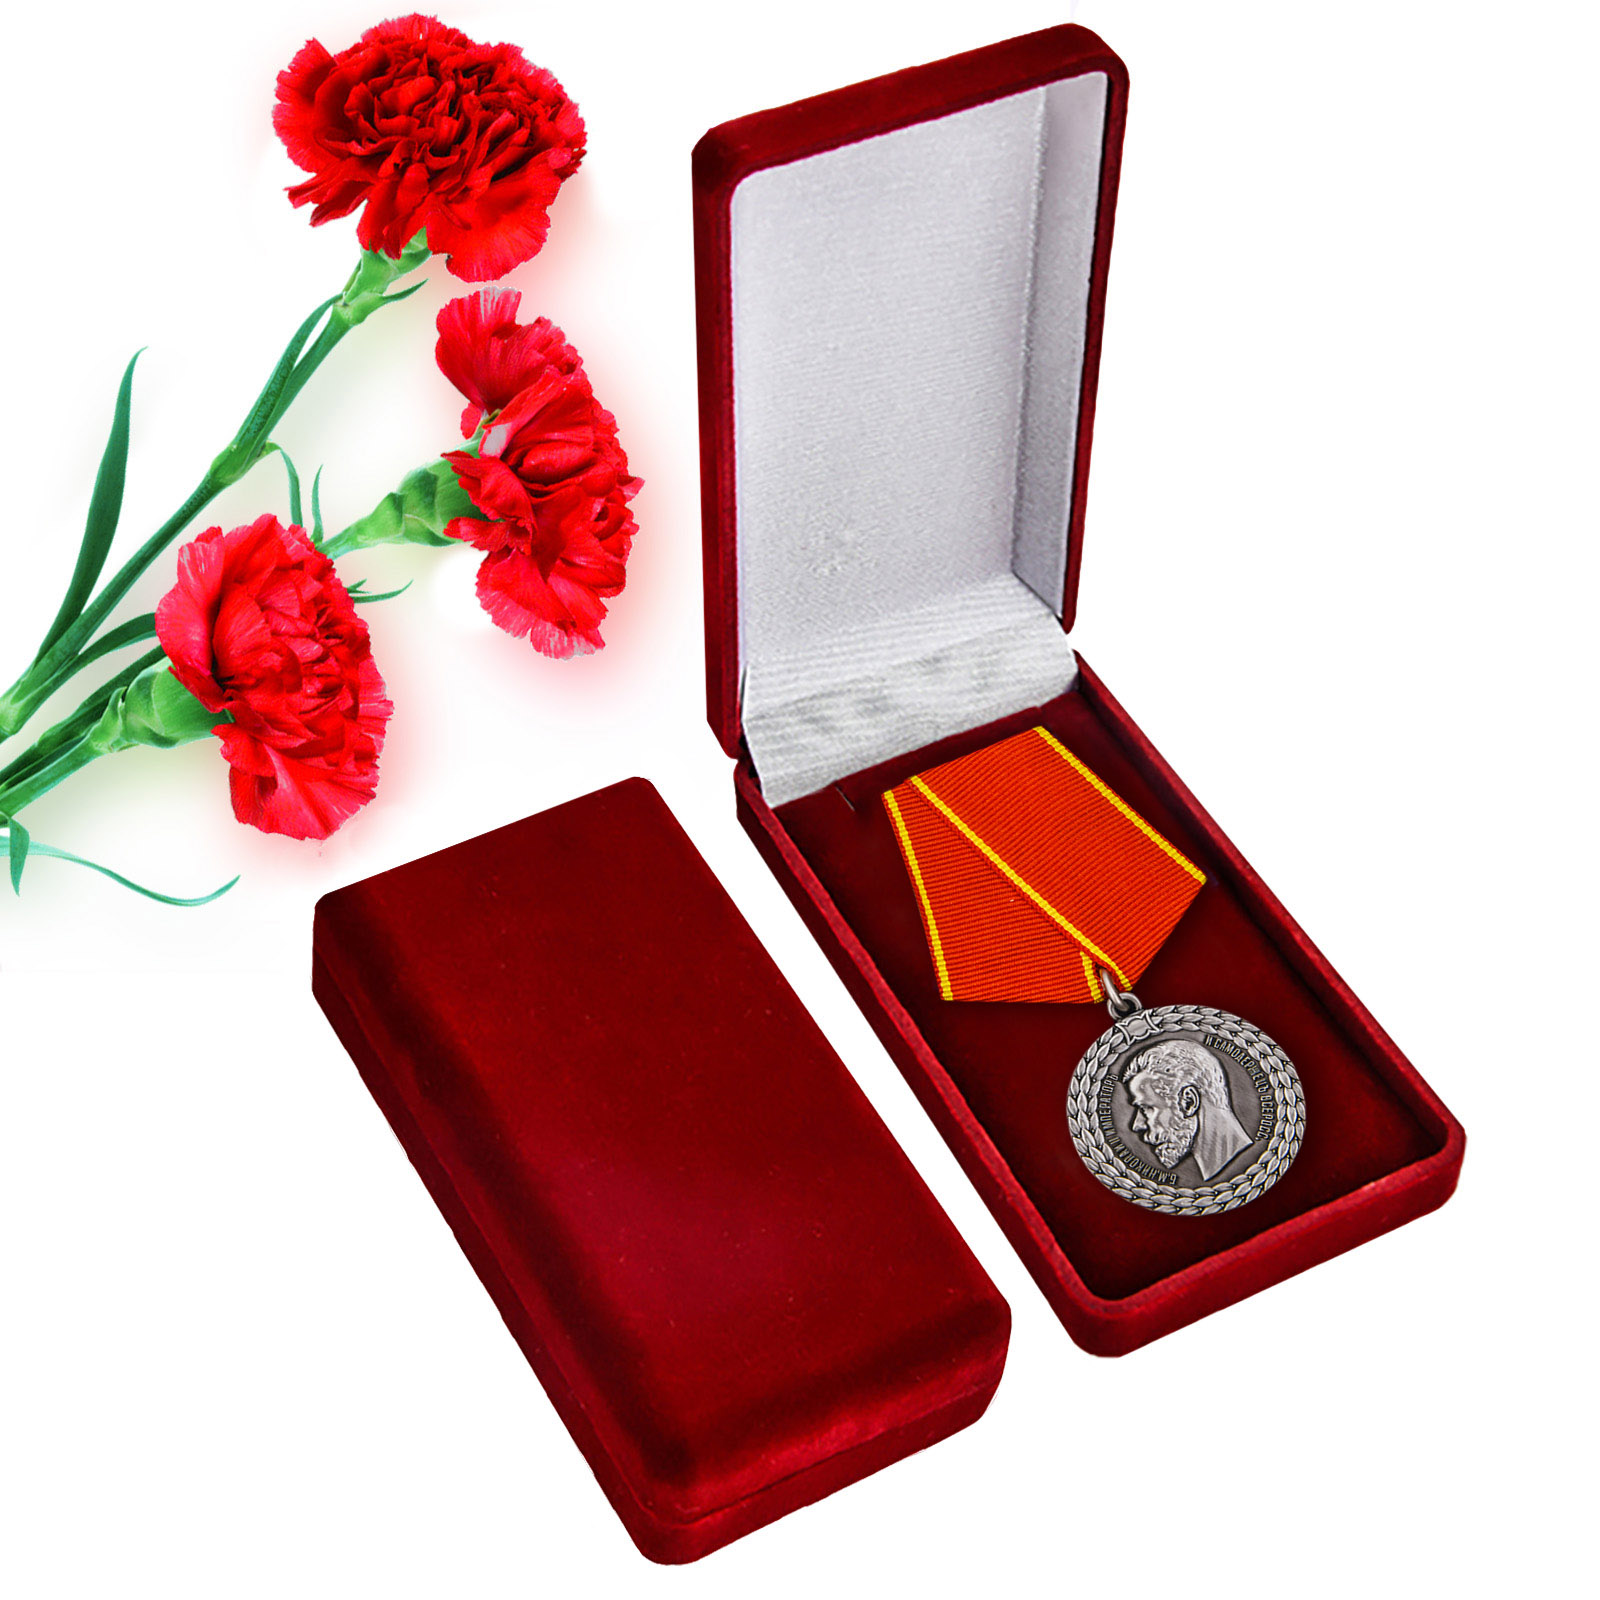 Купить медаль Николая II За беспорочную службу в полиции в подарок